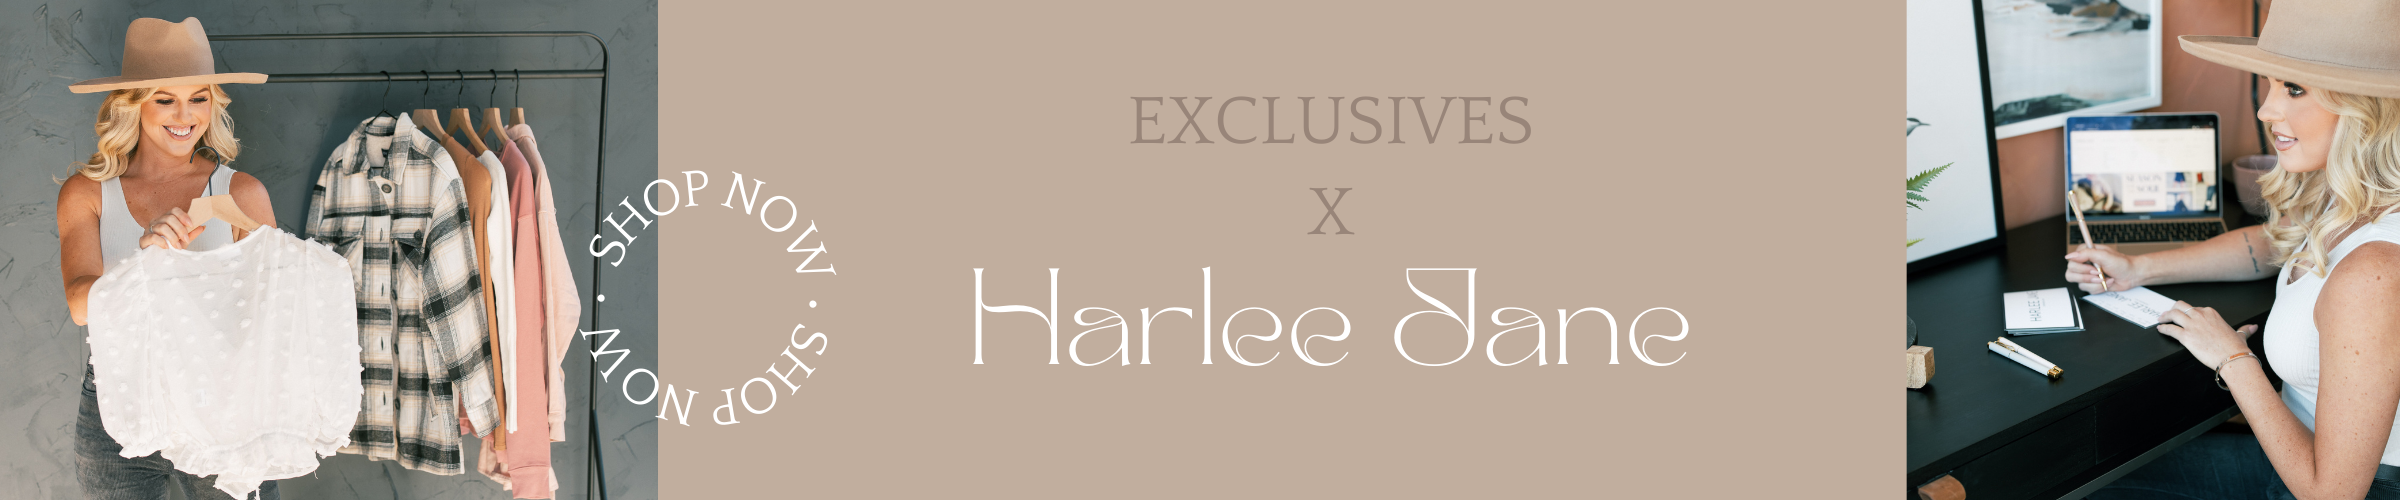 harlee jane exclusives